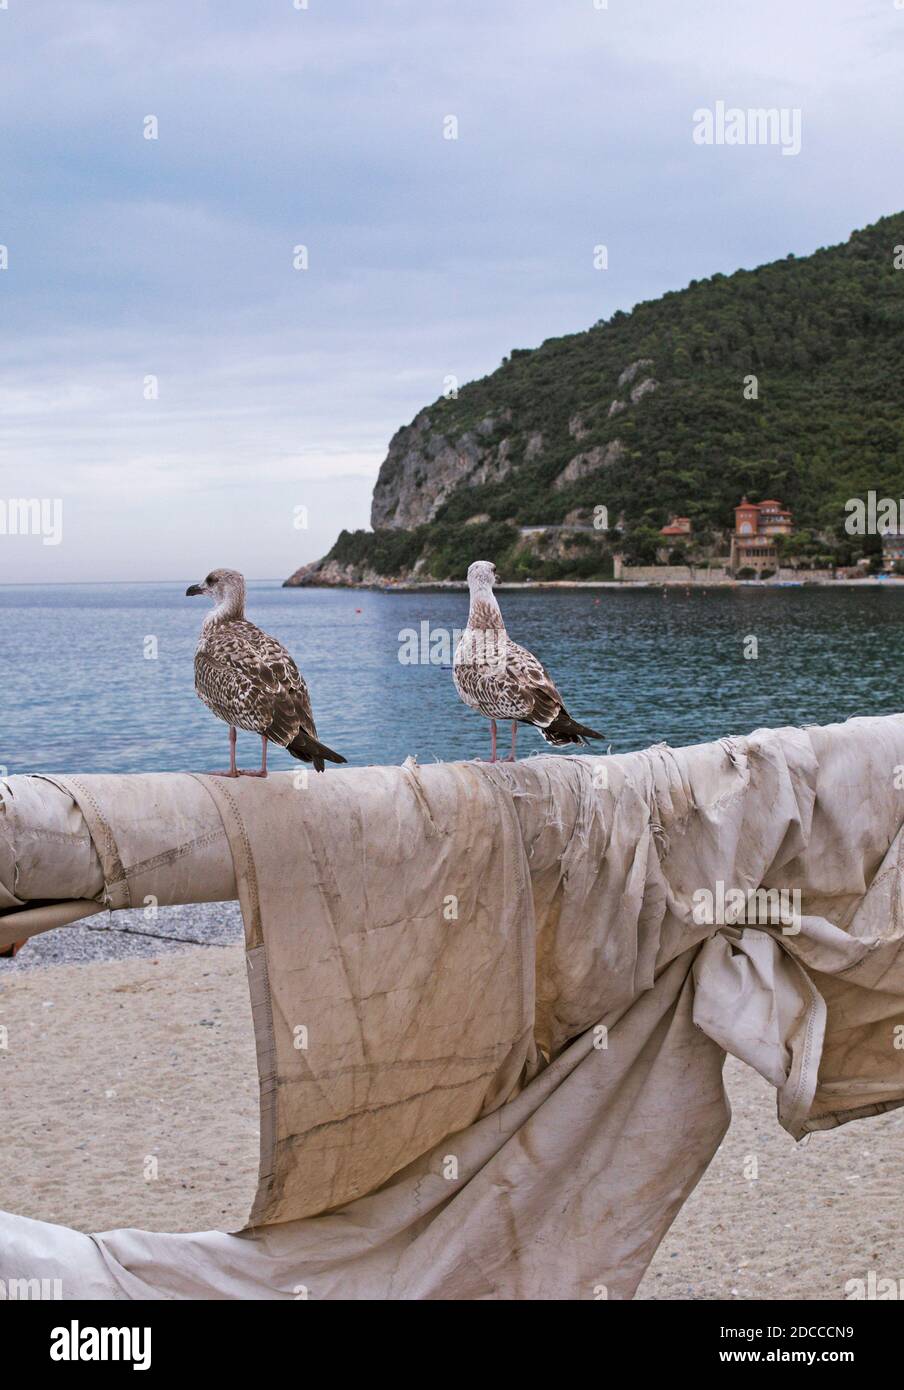 seagulls perched on fishing boat mast, Noli, Riviera di Ponente, Liguria, Italy Stock Photo